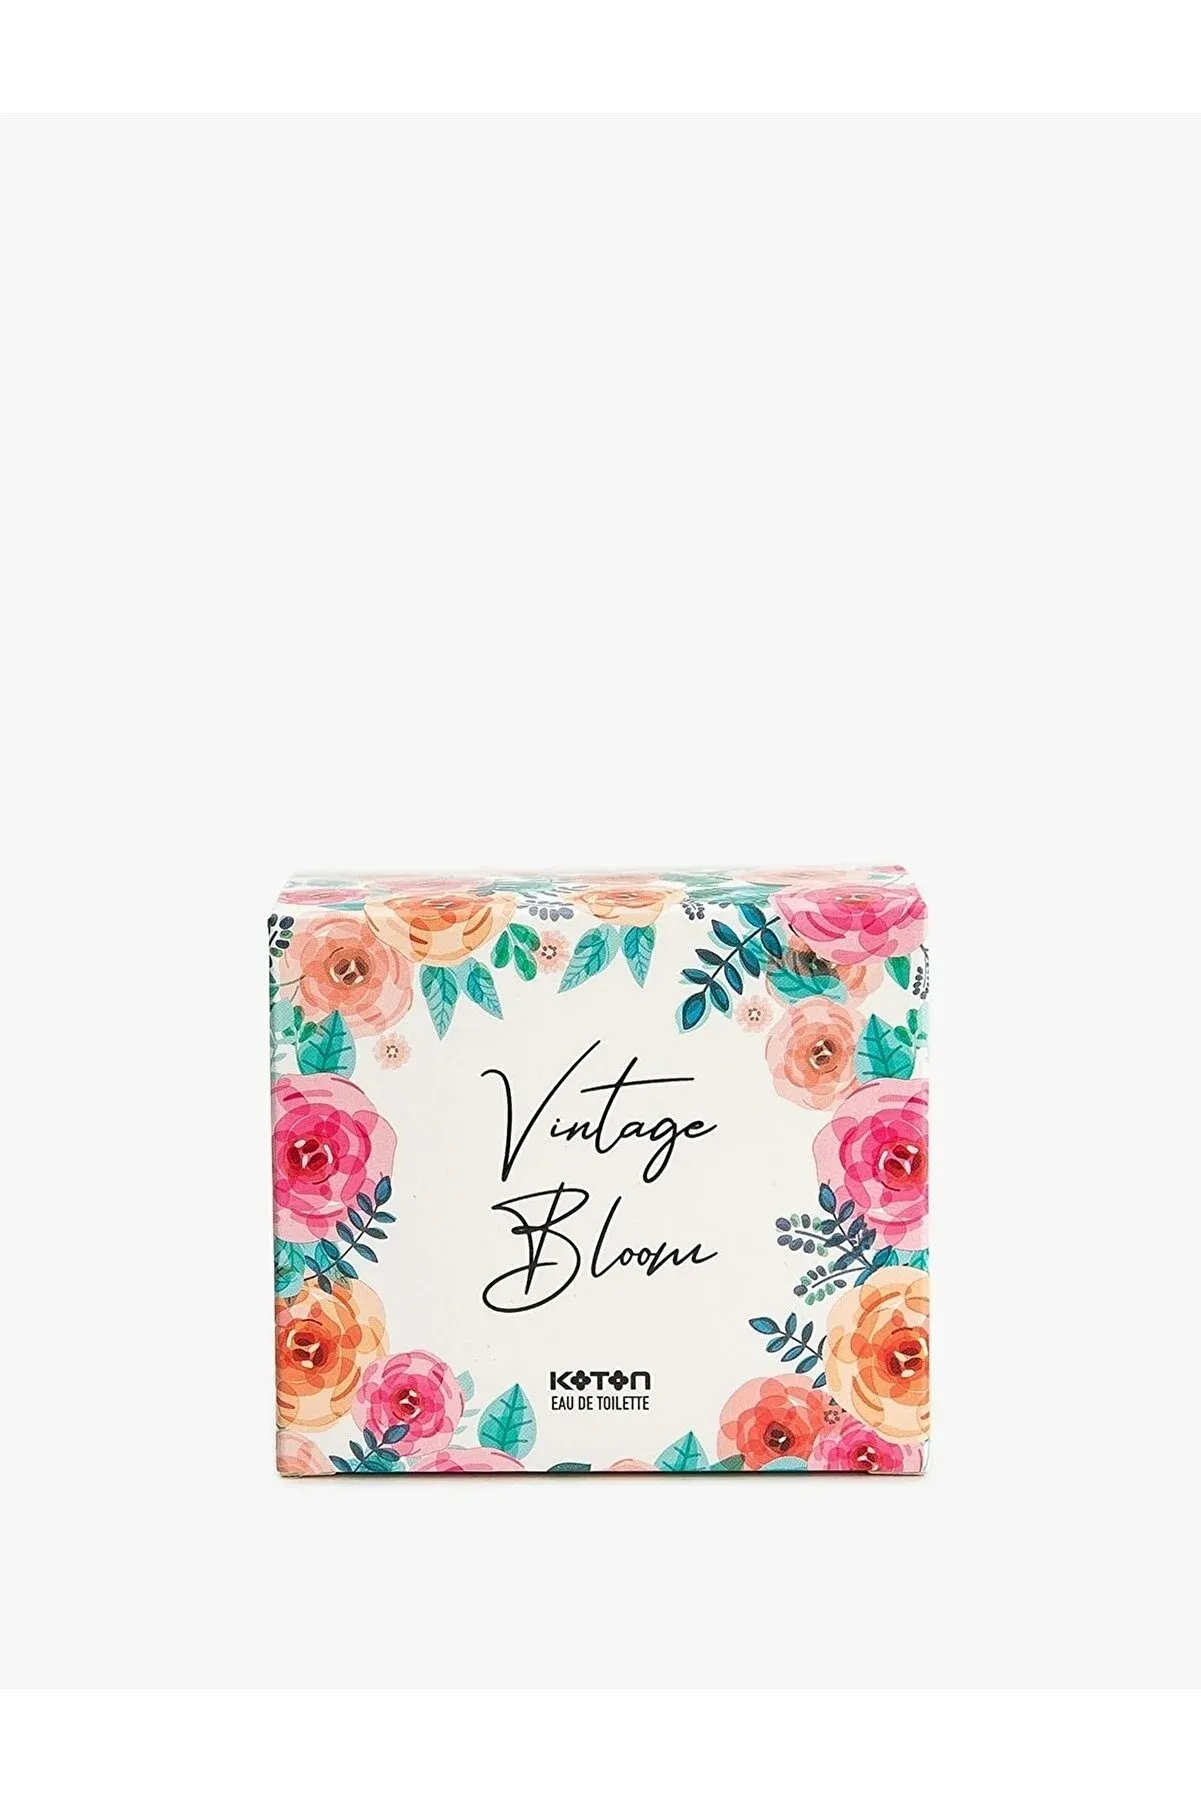 Koton- Women's Perfume- Vintage Bloom-60 ML -عطر -زنانه -کوتون -Vintage Bloom